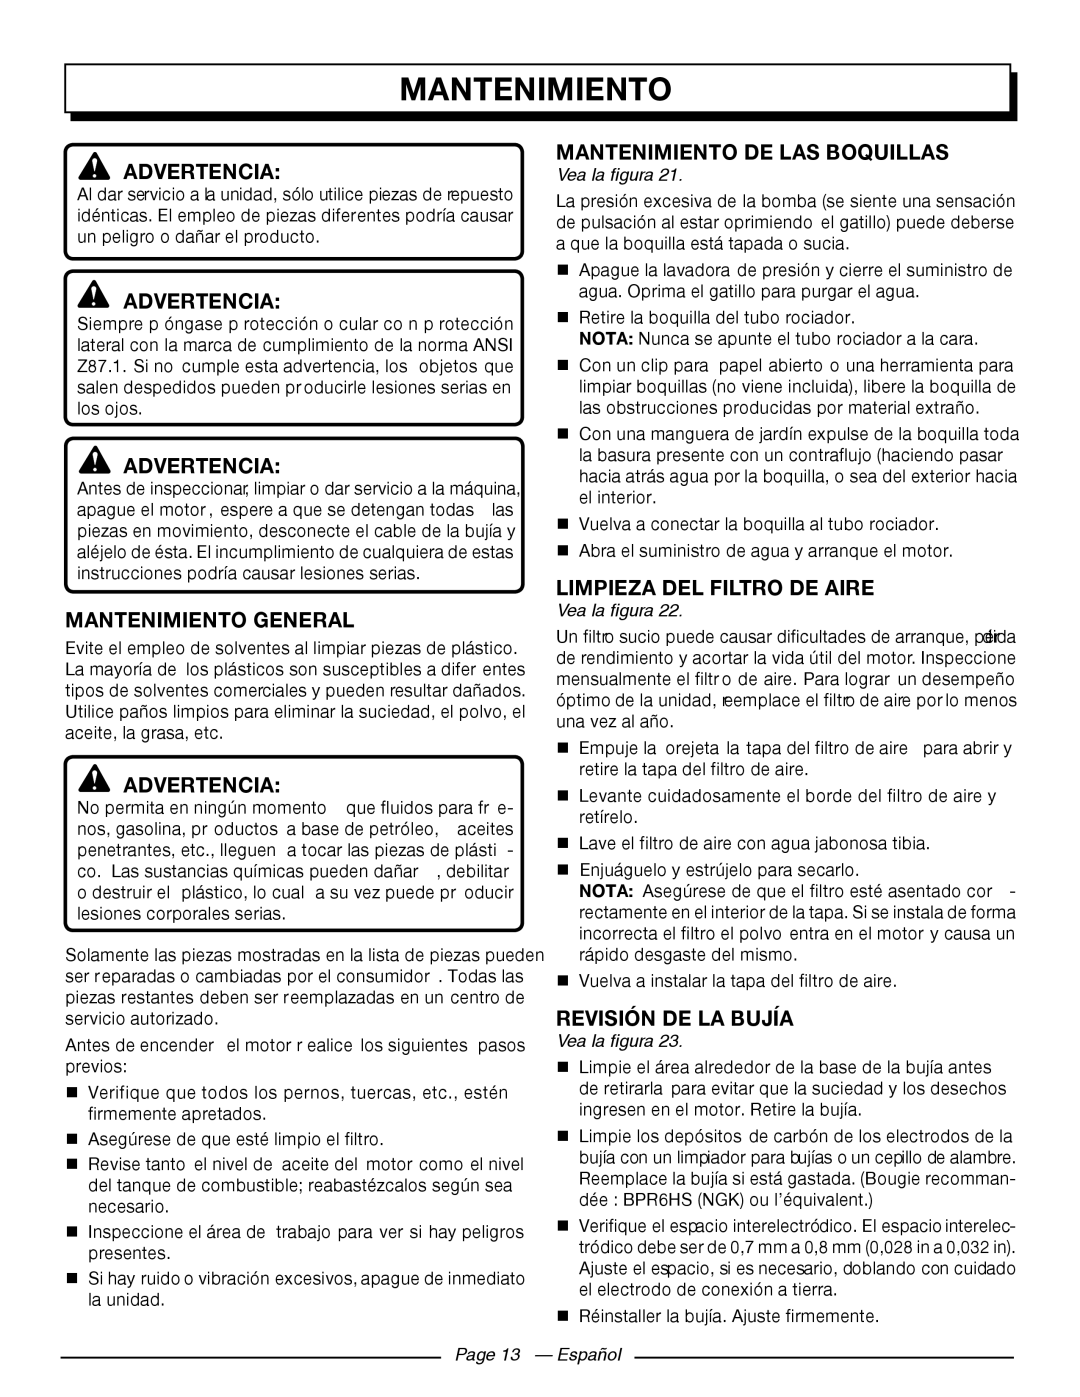 Homelite UT80709 Mantenimiento General, Mantenimiento De Las Boquillas, Limpieza Del Filtro De Aire, Advertencia 